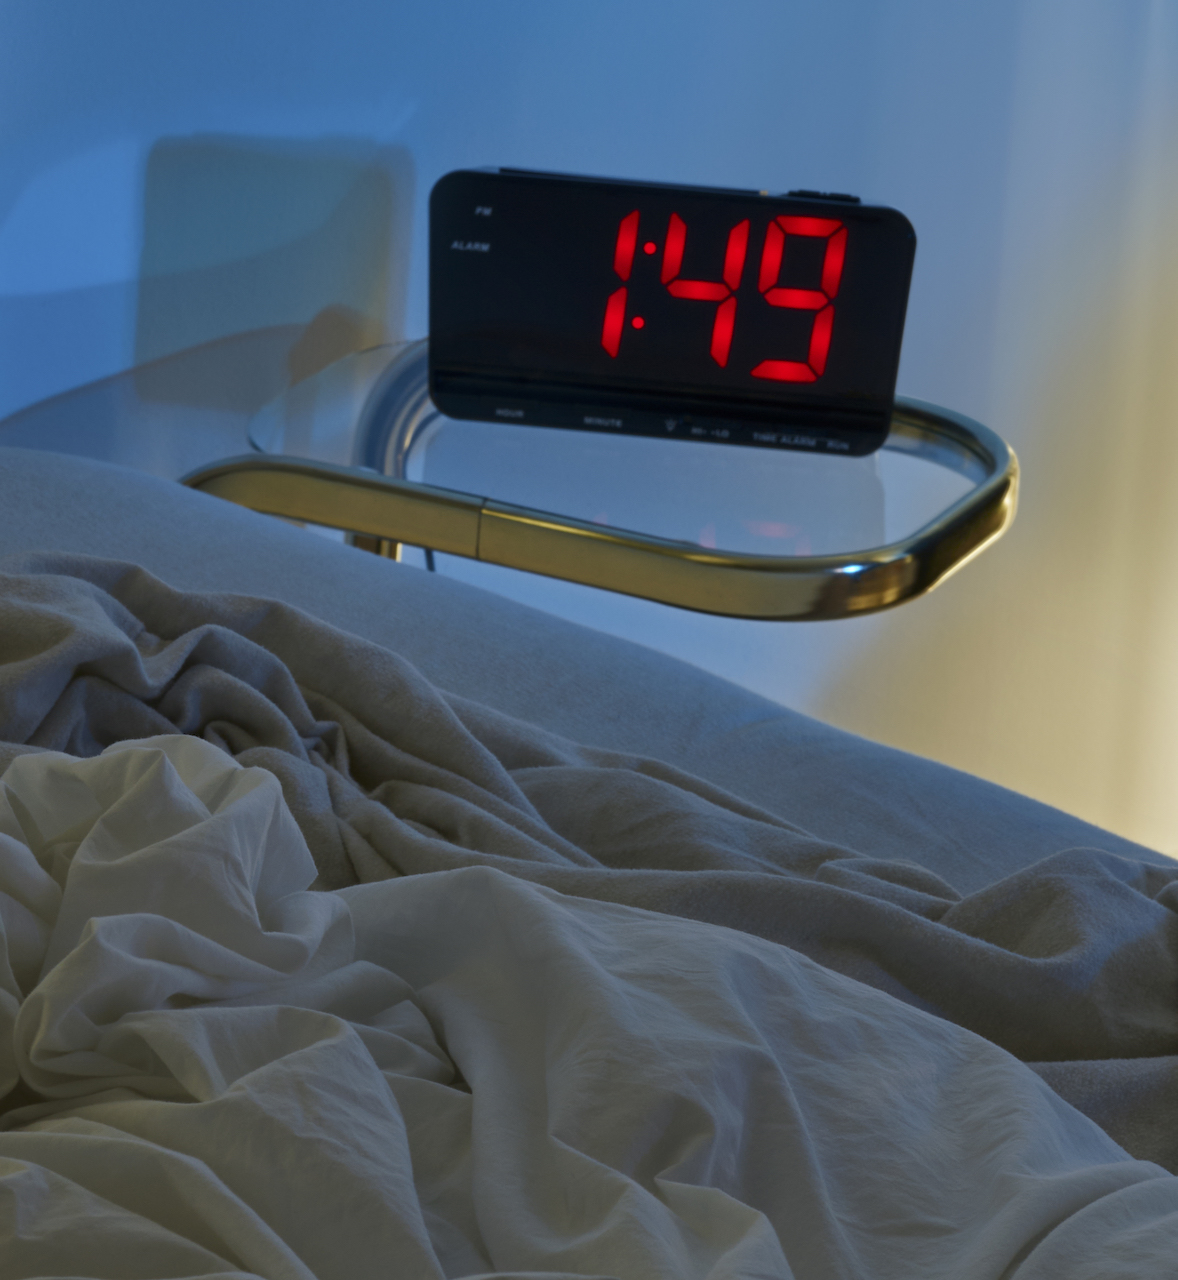 ¿Por qué empeora la calidad del sueño cuando envejecemos?